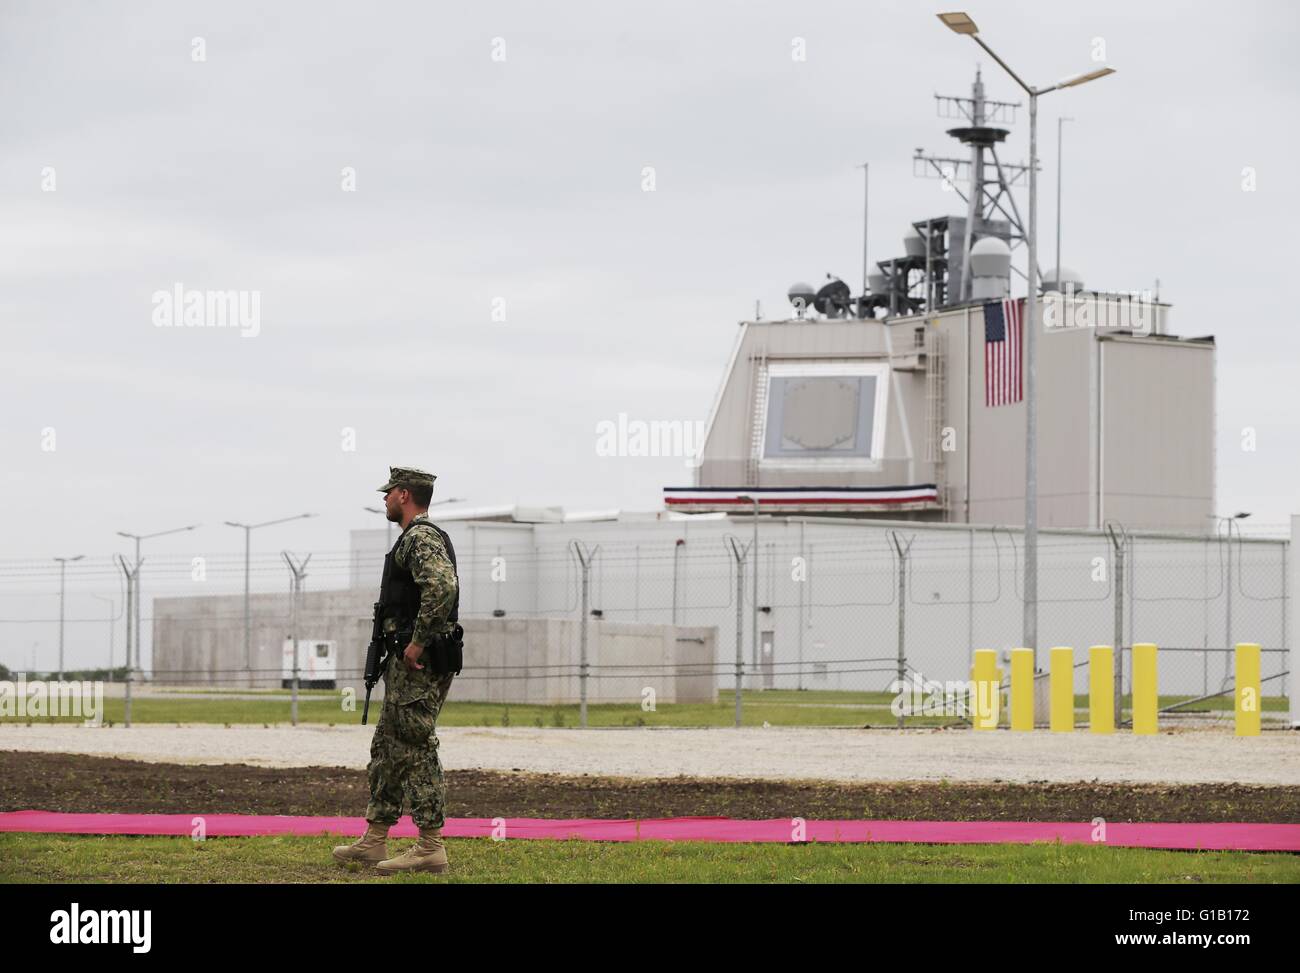 Un soldat américain se place en avant de la première base pour faire partie de la protection antimissile de l'OTAN à Deveselu, Roumanie, 12 mai 2016. L'égide système développé par la Marine américaine est fondée à cet endroit. Photo : KAY NIETFELD/dpa Banque D'Images